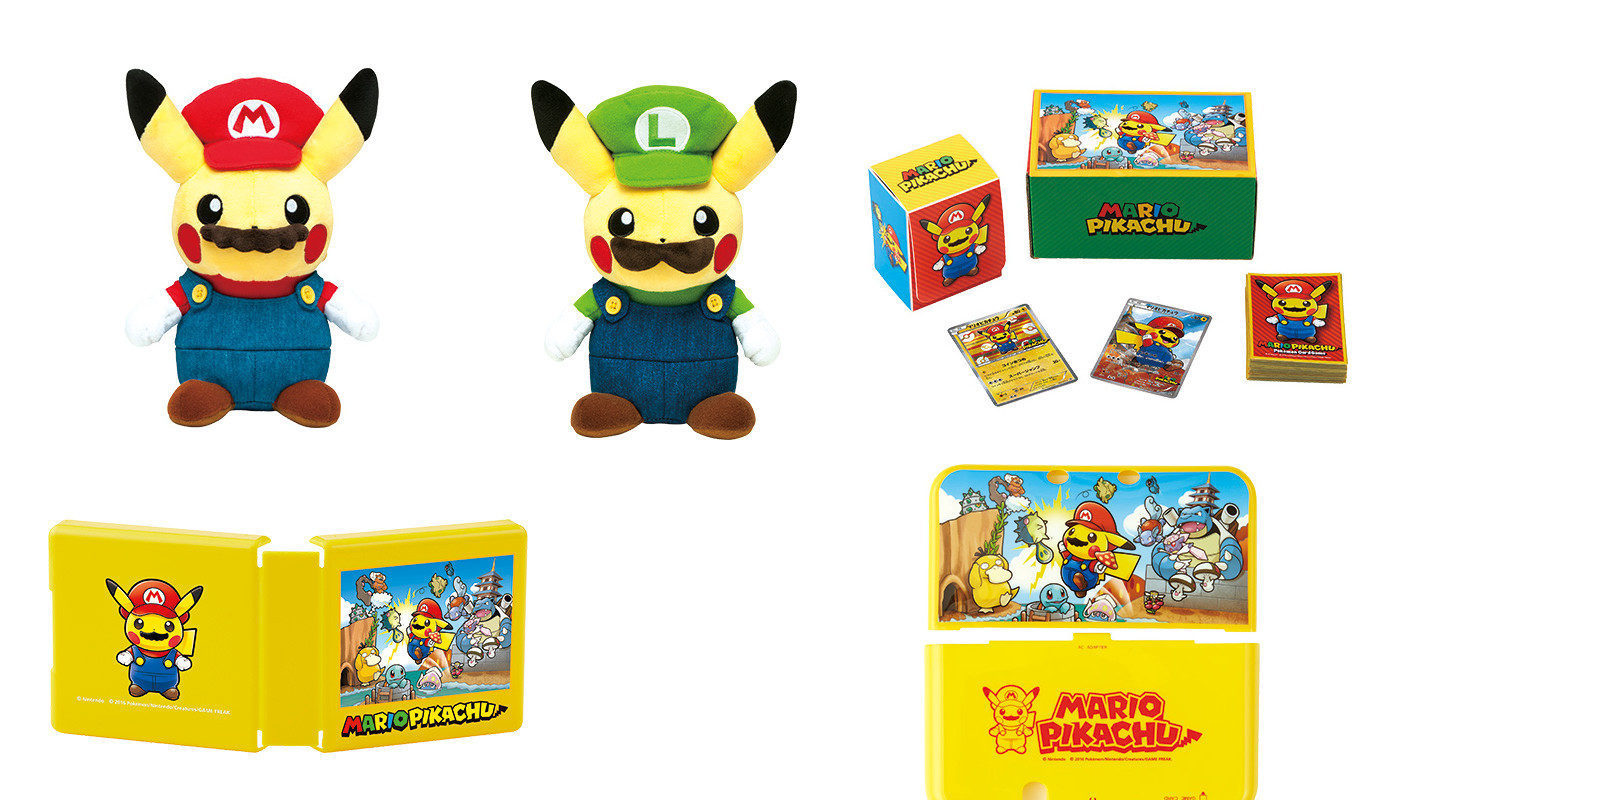 Pikachu se disfraza de Mario y Luigi para más merchandising oficial